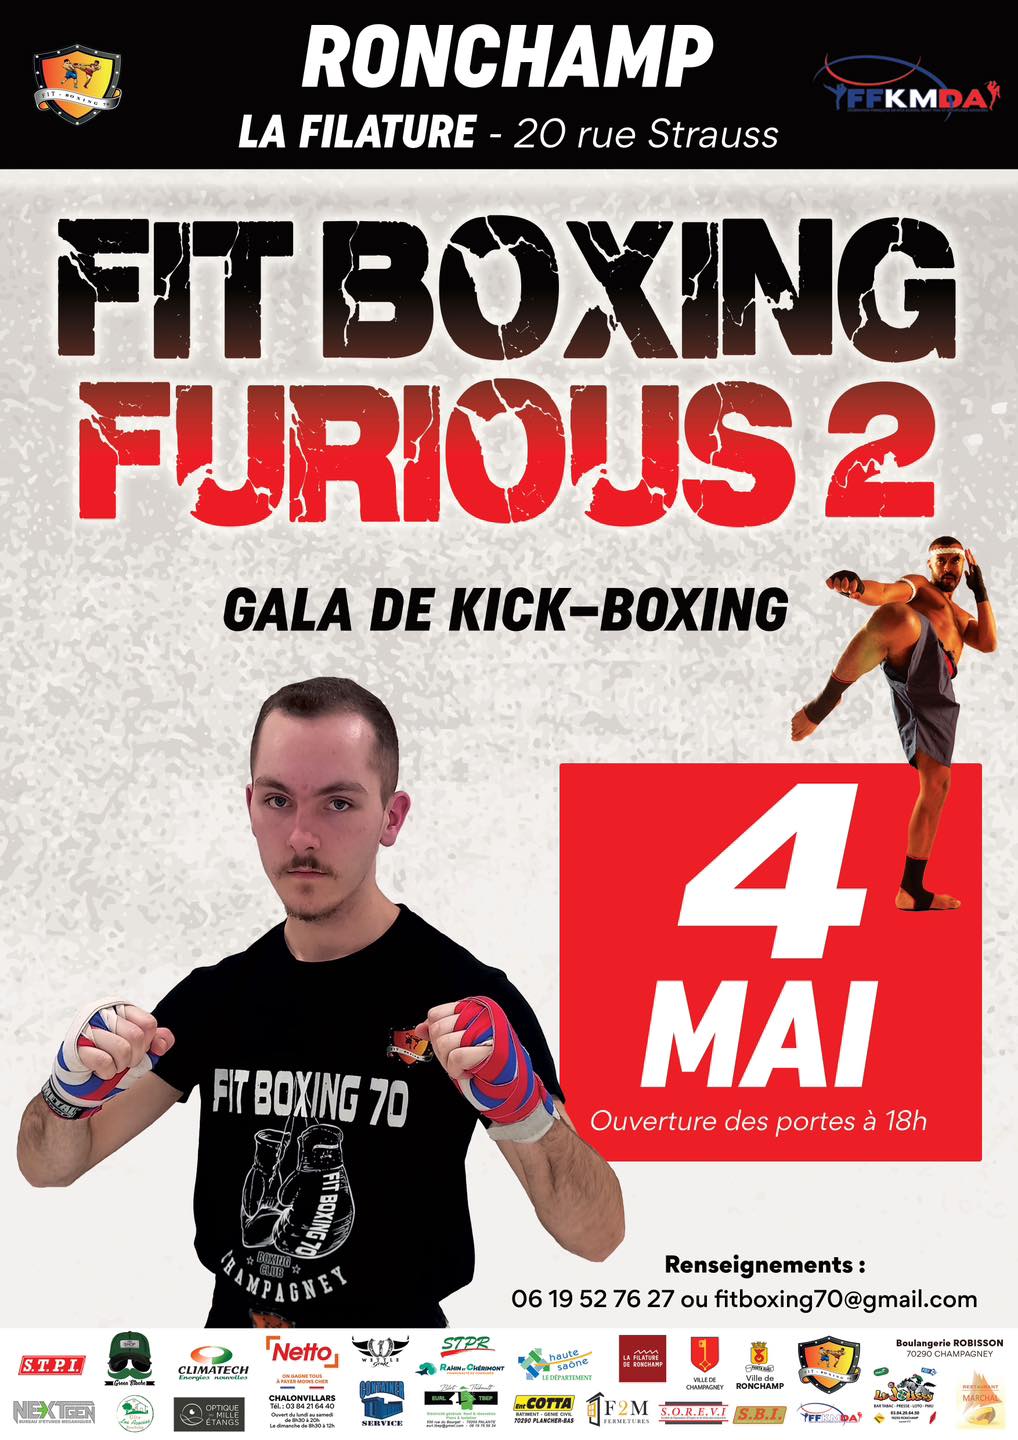 Fit Boxing Furious 2  La Filature de Ronchamp